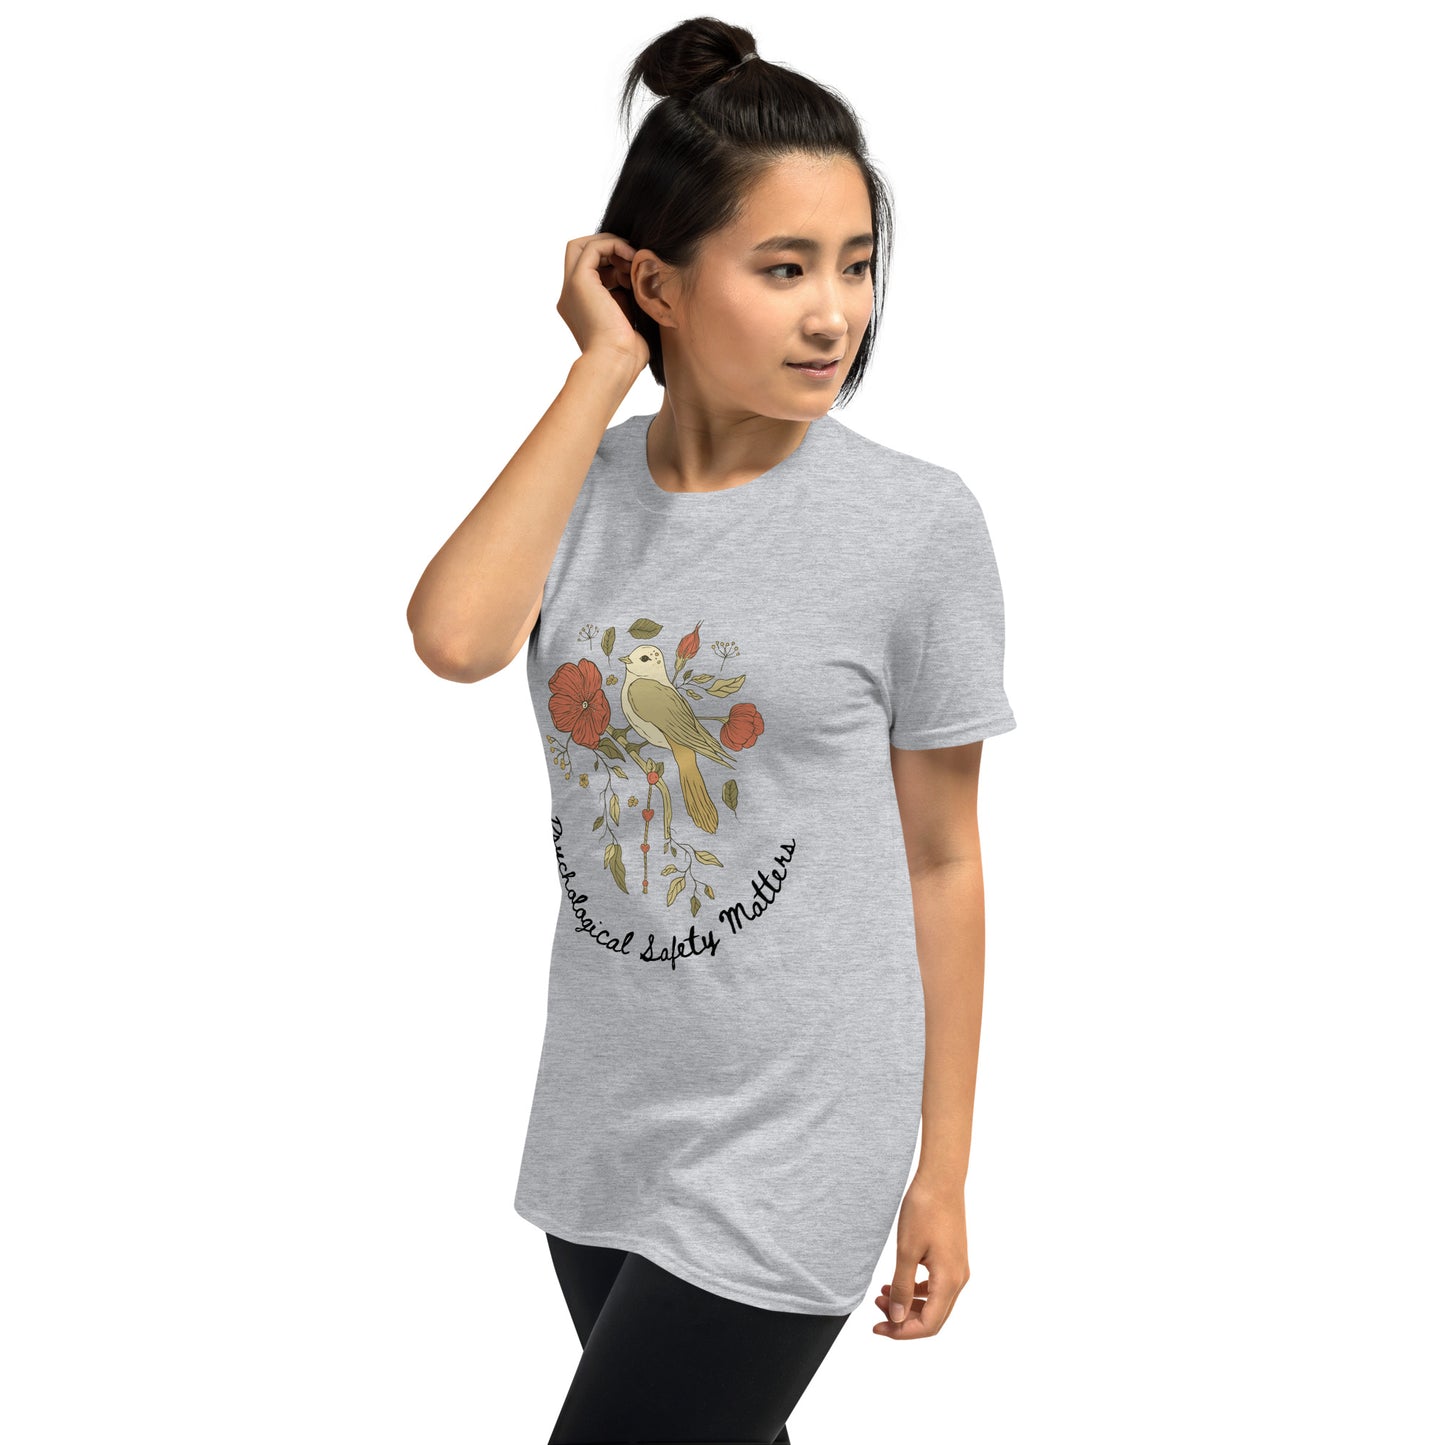 Psychological Safety Matters Vintage bird design Short-Sleeve Unisex T-Shirt